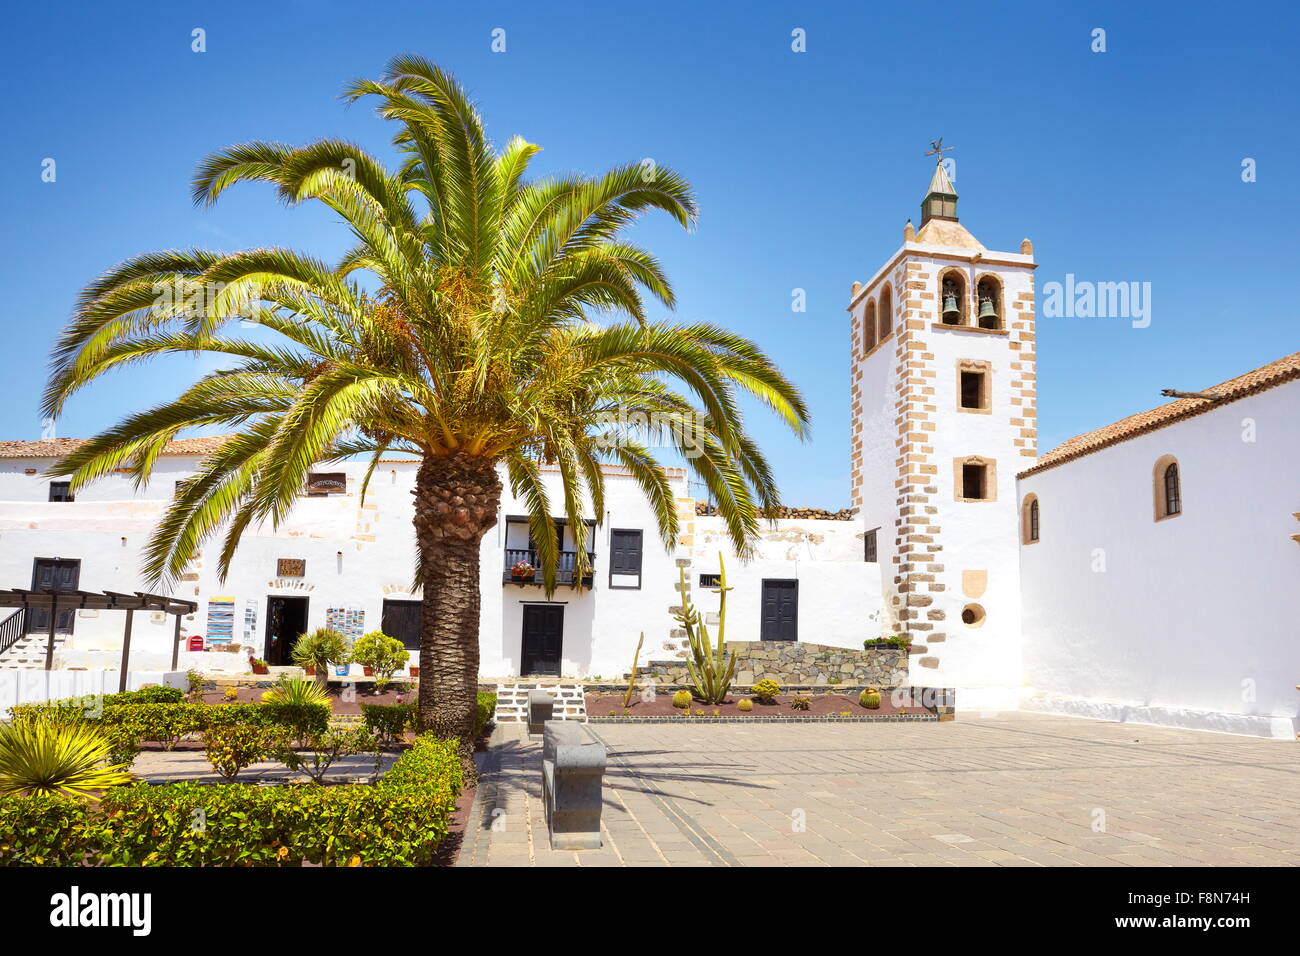 L'île de Fuerteventura, Corralejo - Cathédrale de Santa Maria de Betancuria, vieille ville, l'Espagne, Îles Canaries Banque D'Images